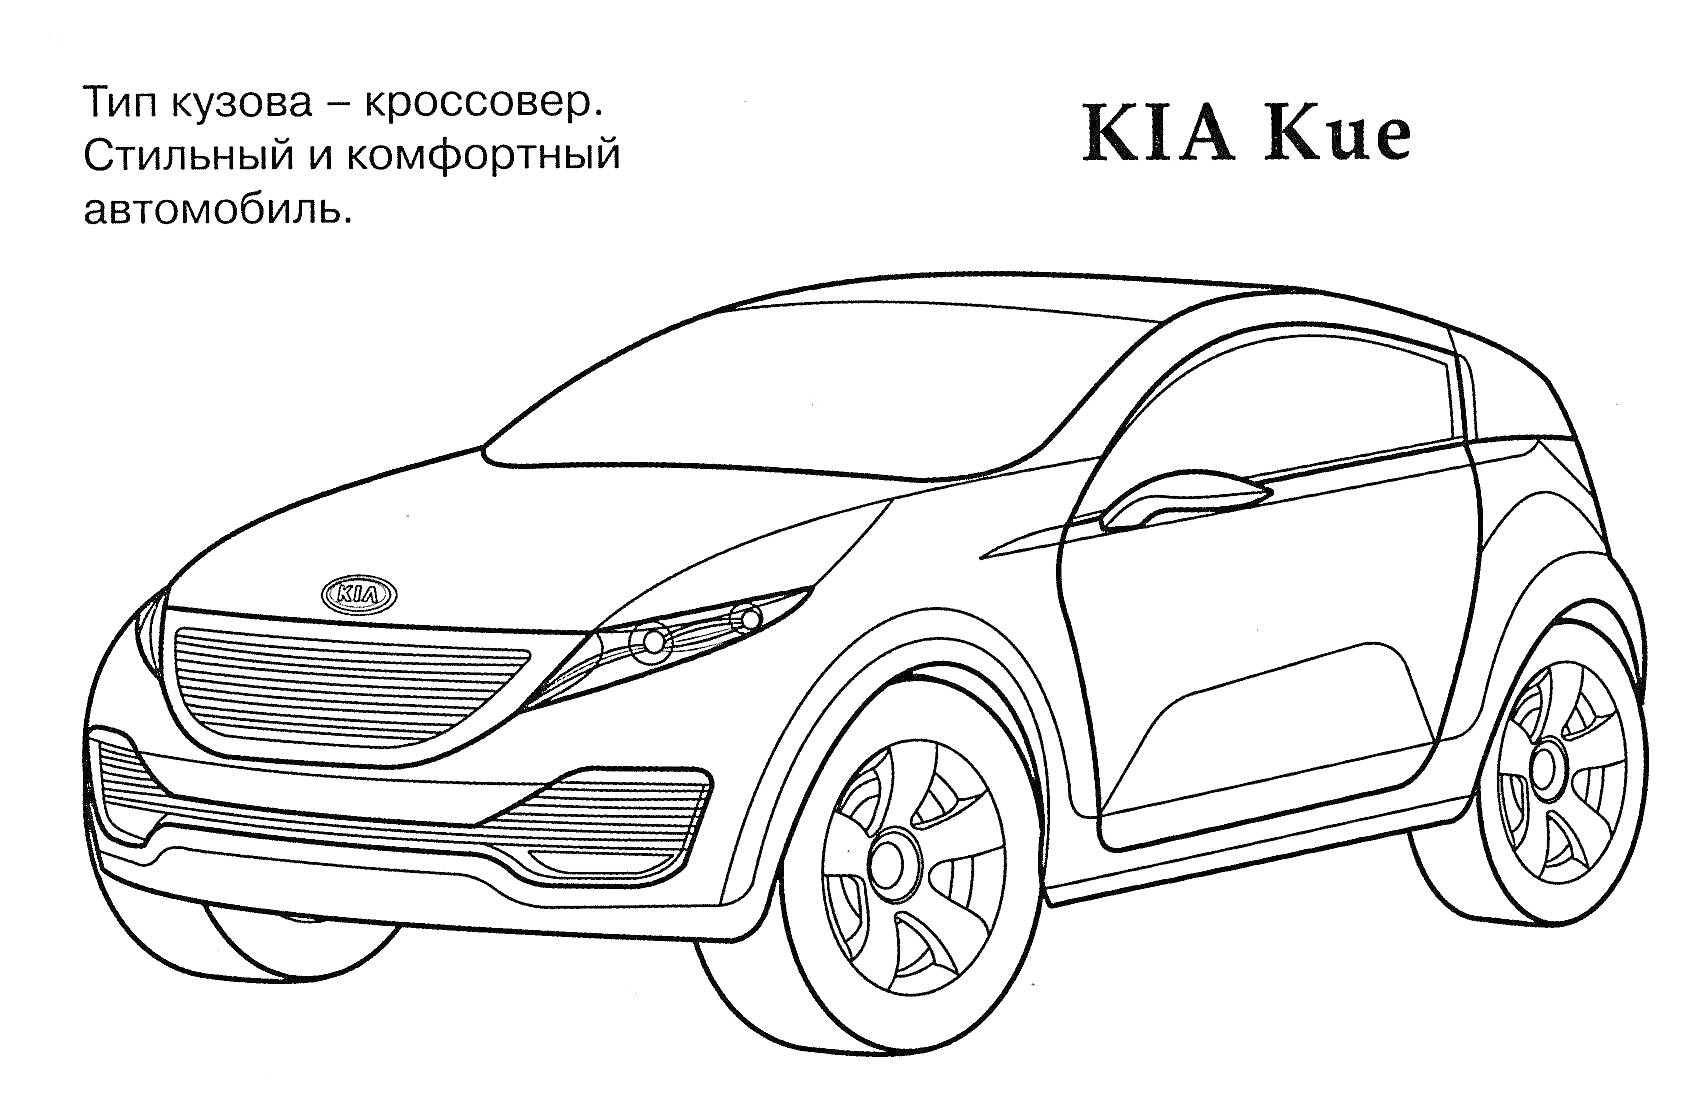 Раскраска KIA Kue - Кроссовер. Стильный и комфортный автомобиль.